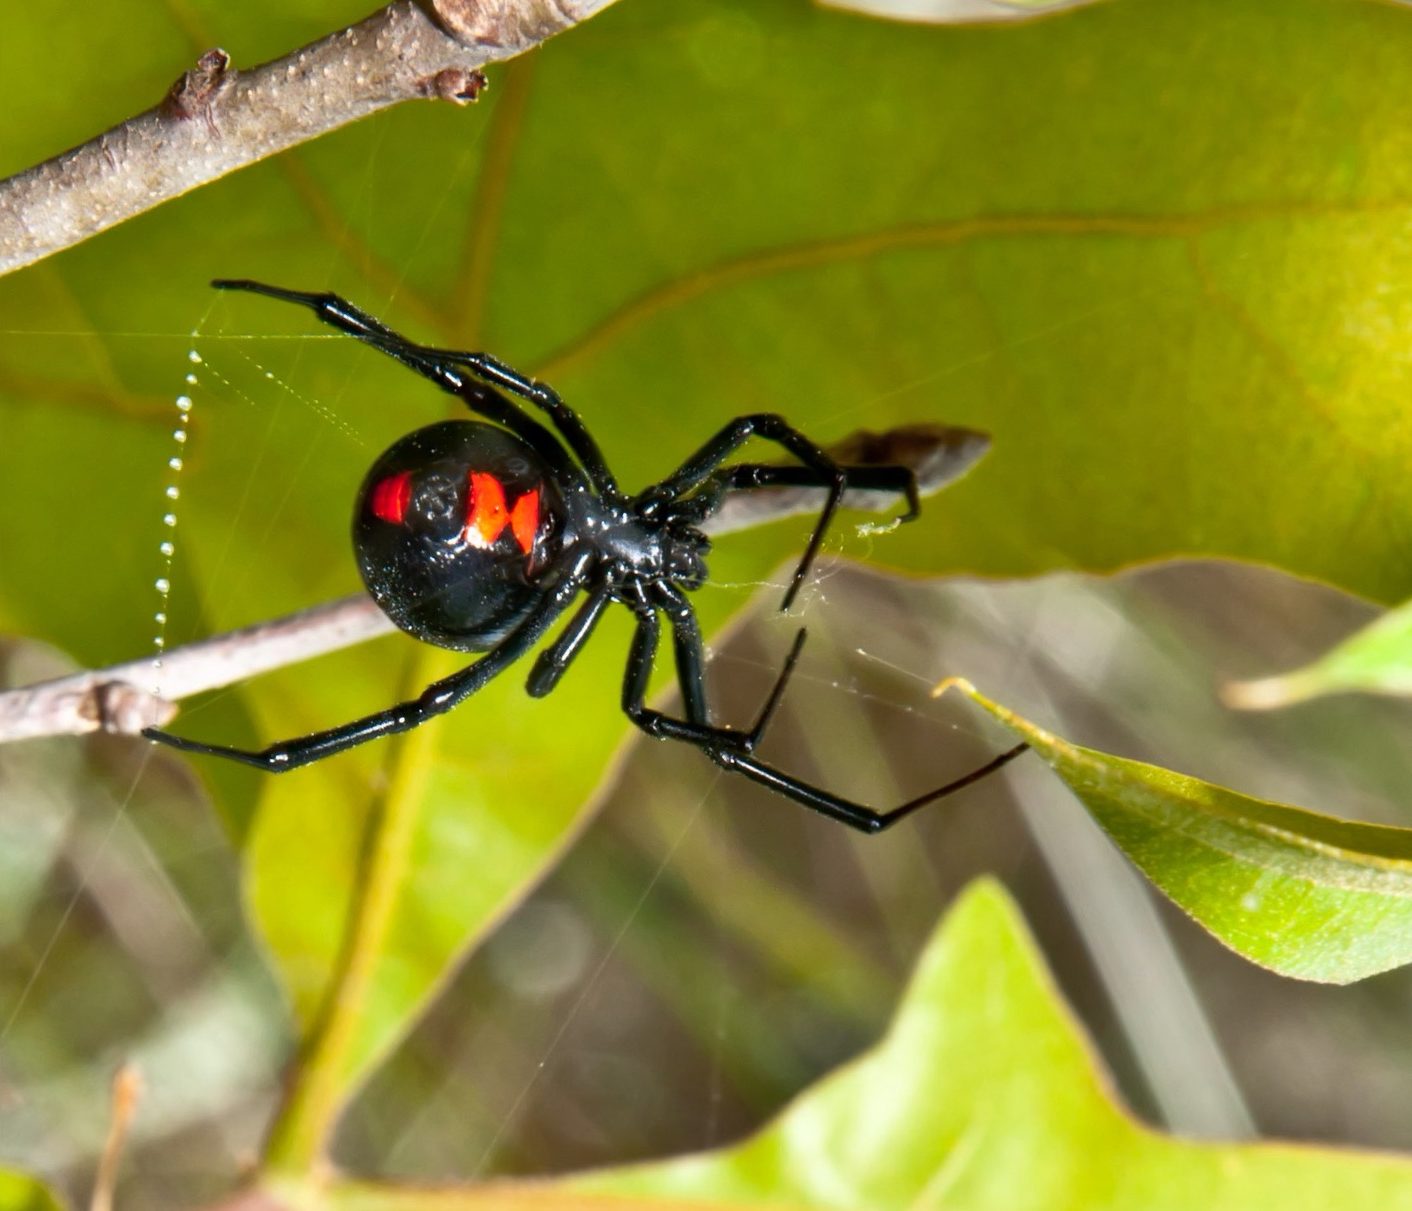 Black Widow spider pest library